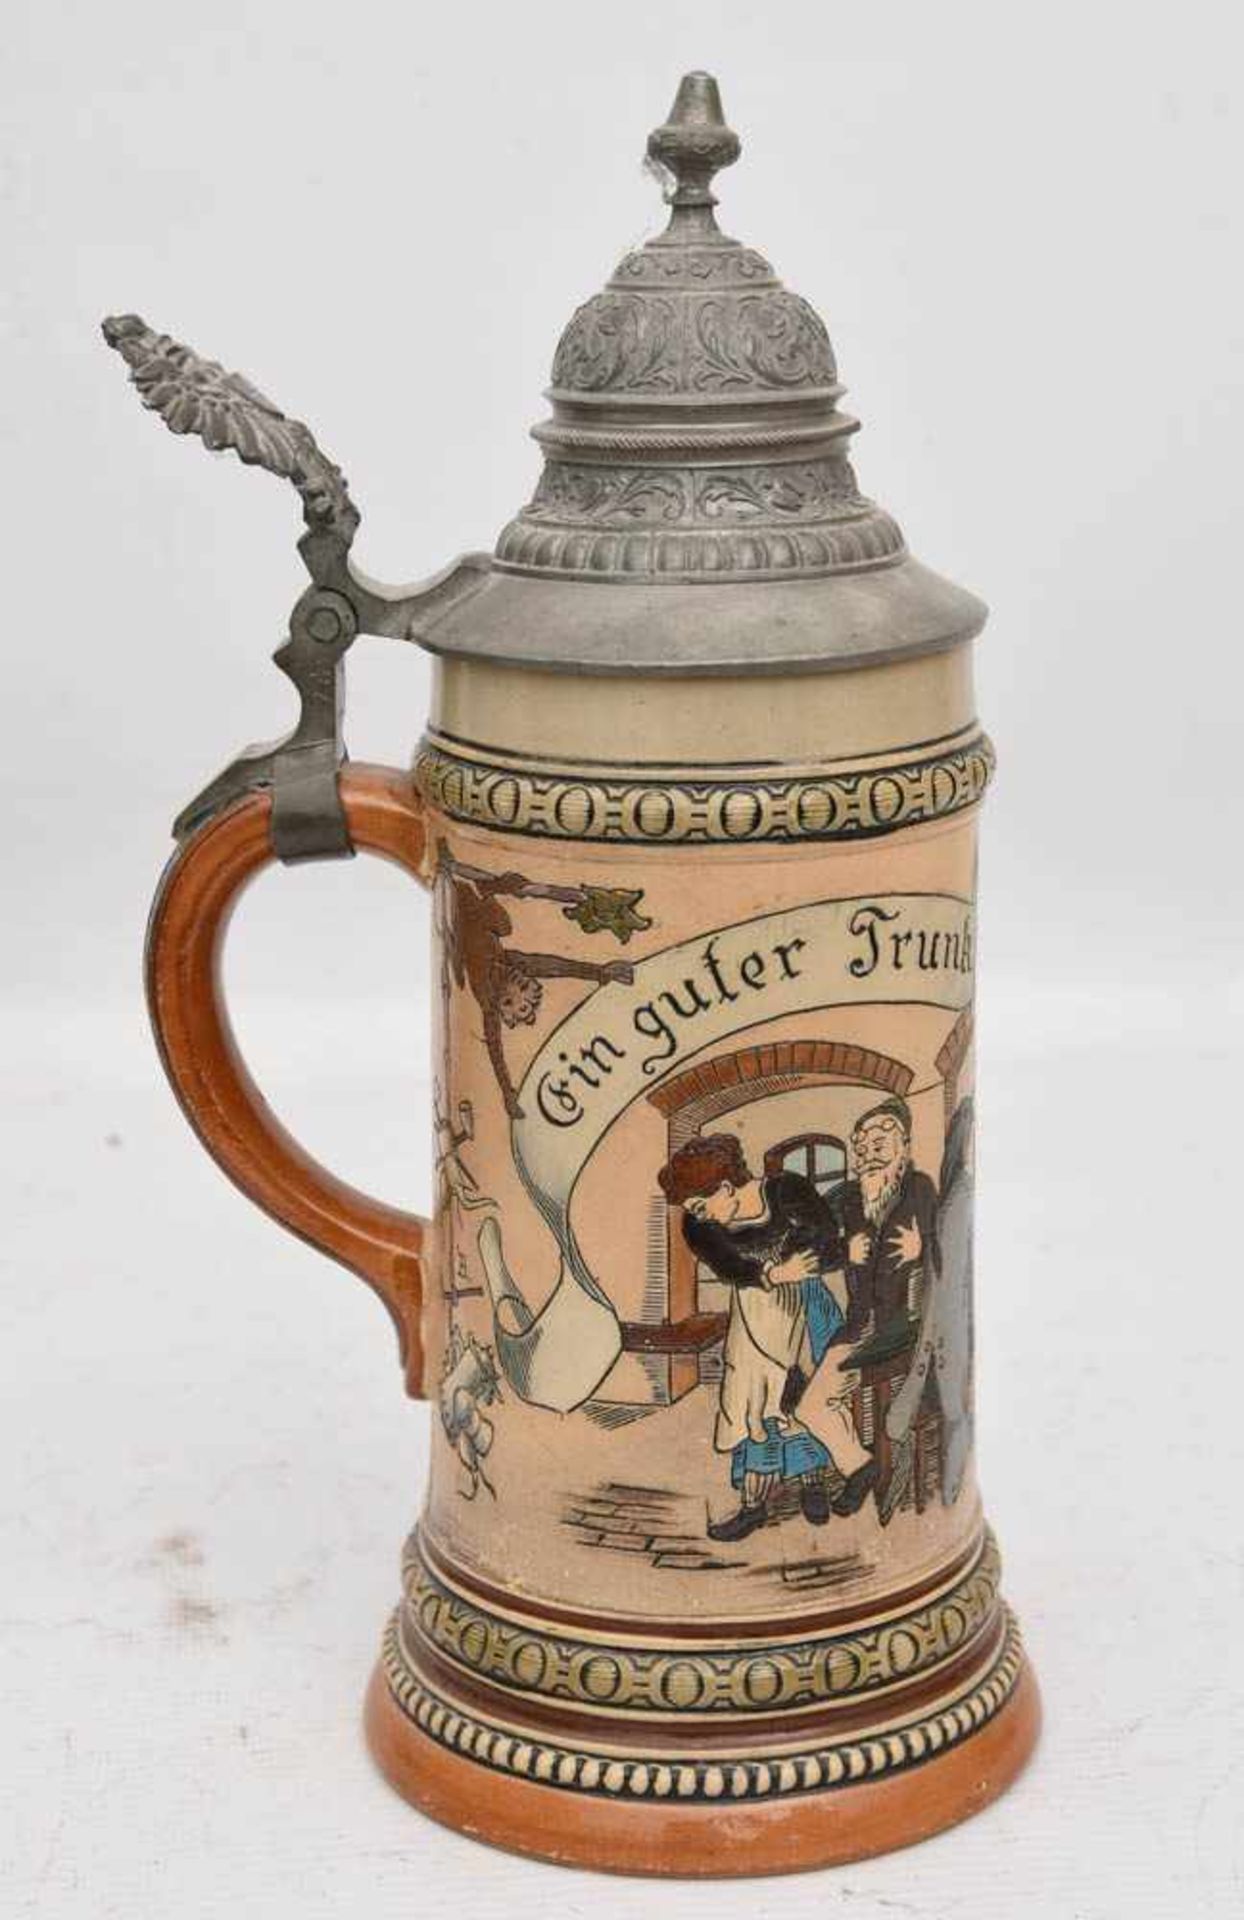 BIERKRUG "EIN GUTER TRUNK", bemalte glasierte Keramik/Zinn gemarkt, um 1900Zinndeckelkrug mit